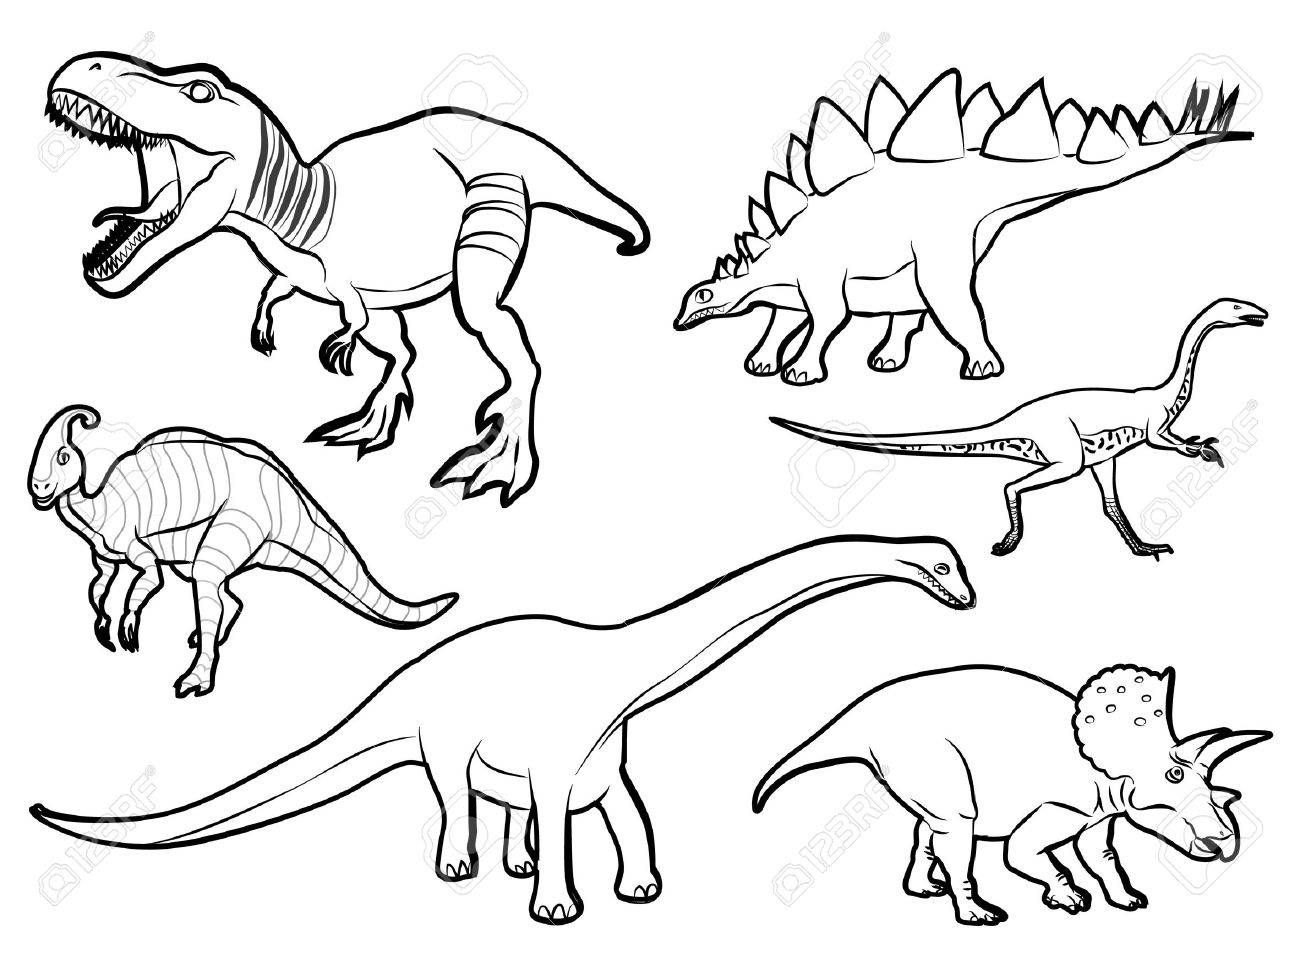 Контуры всех динозавров